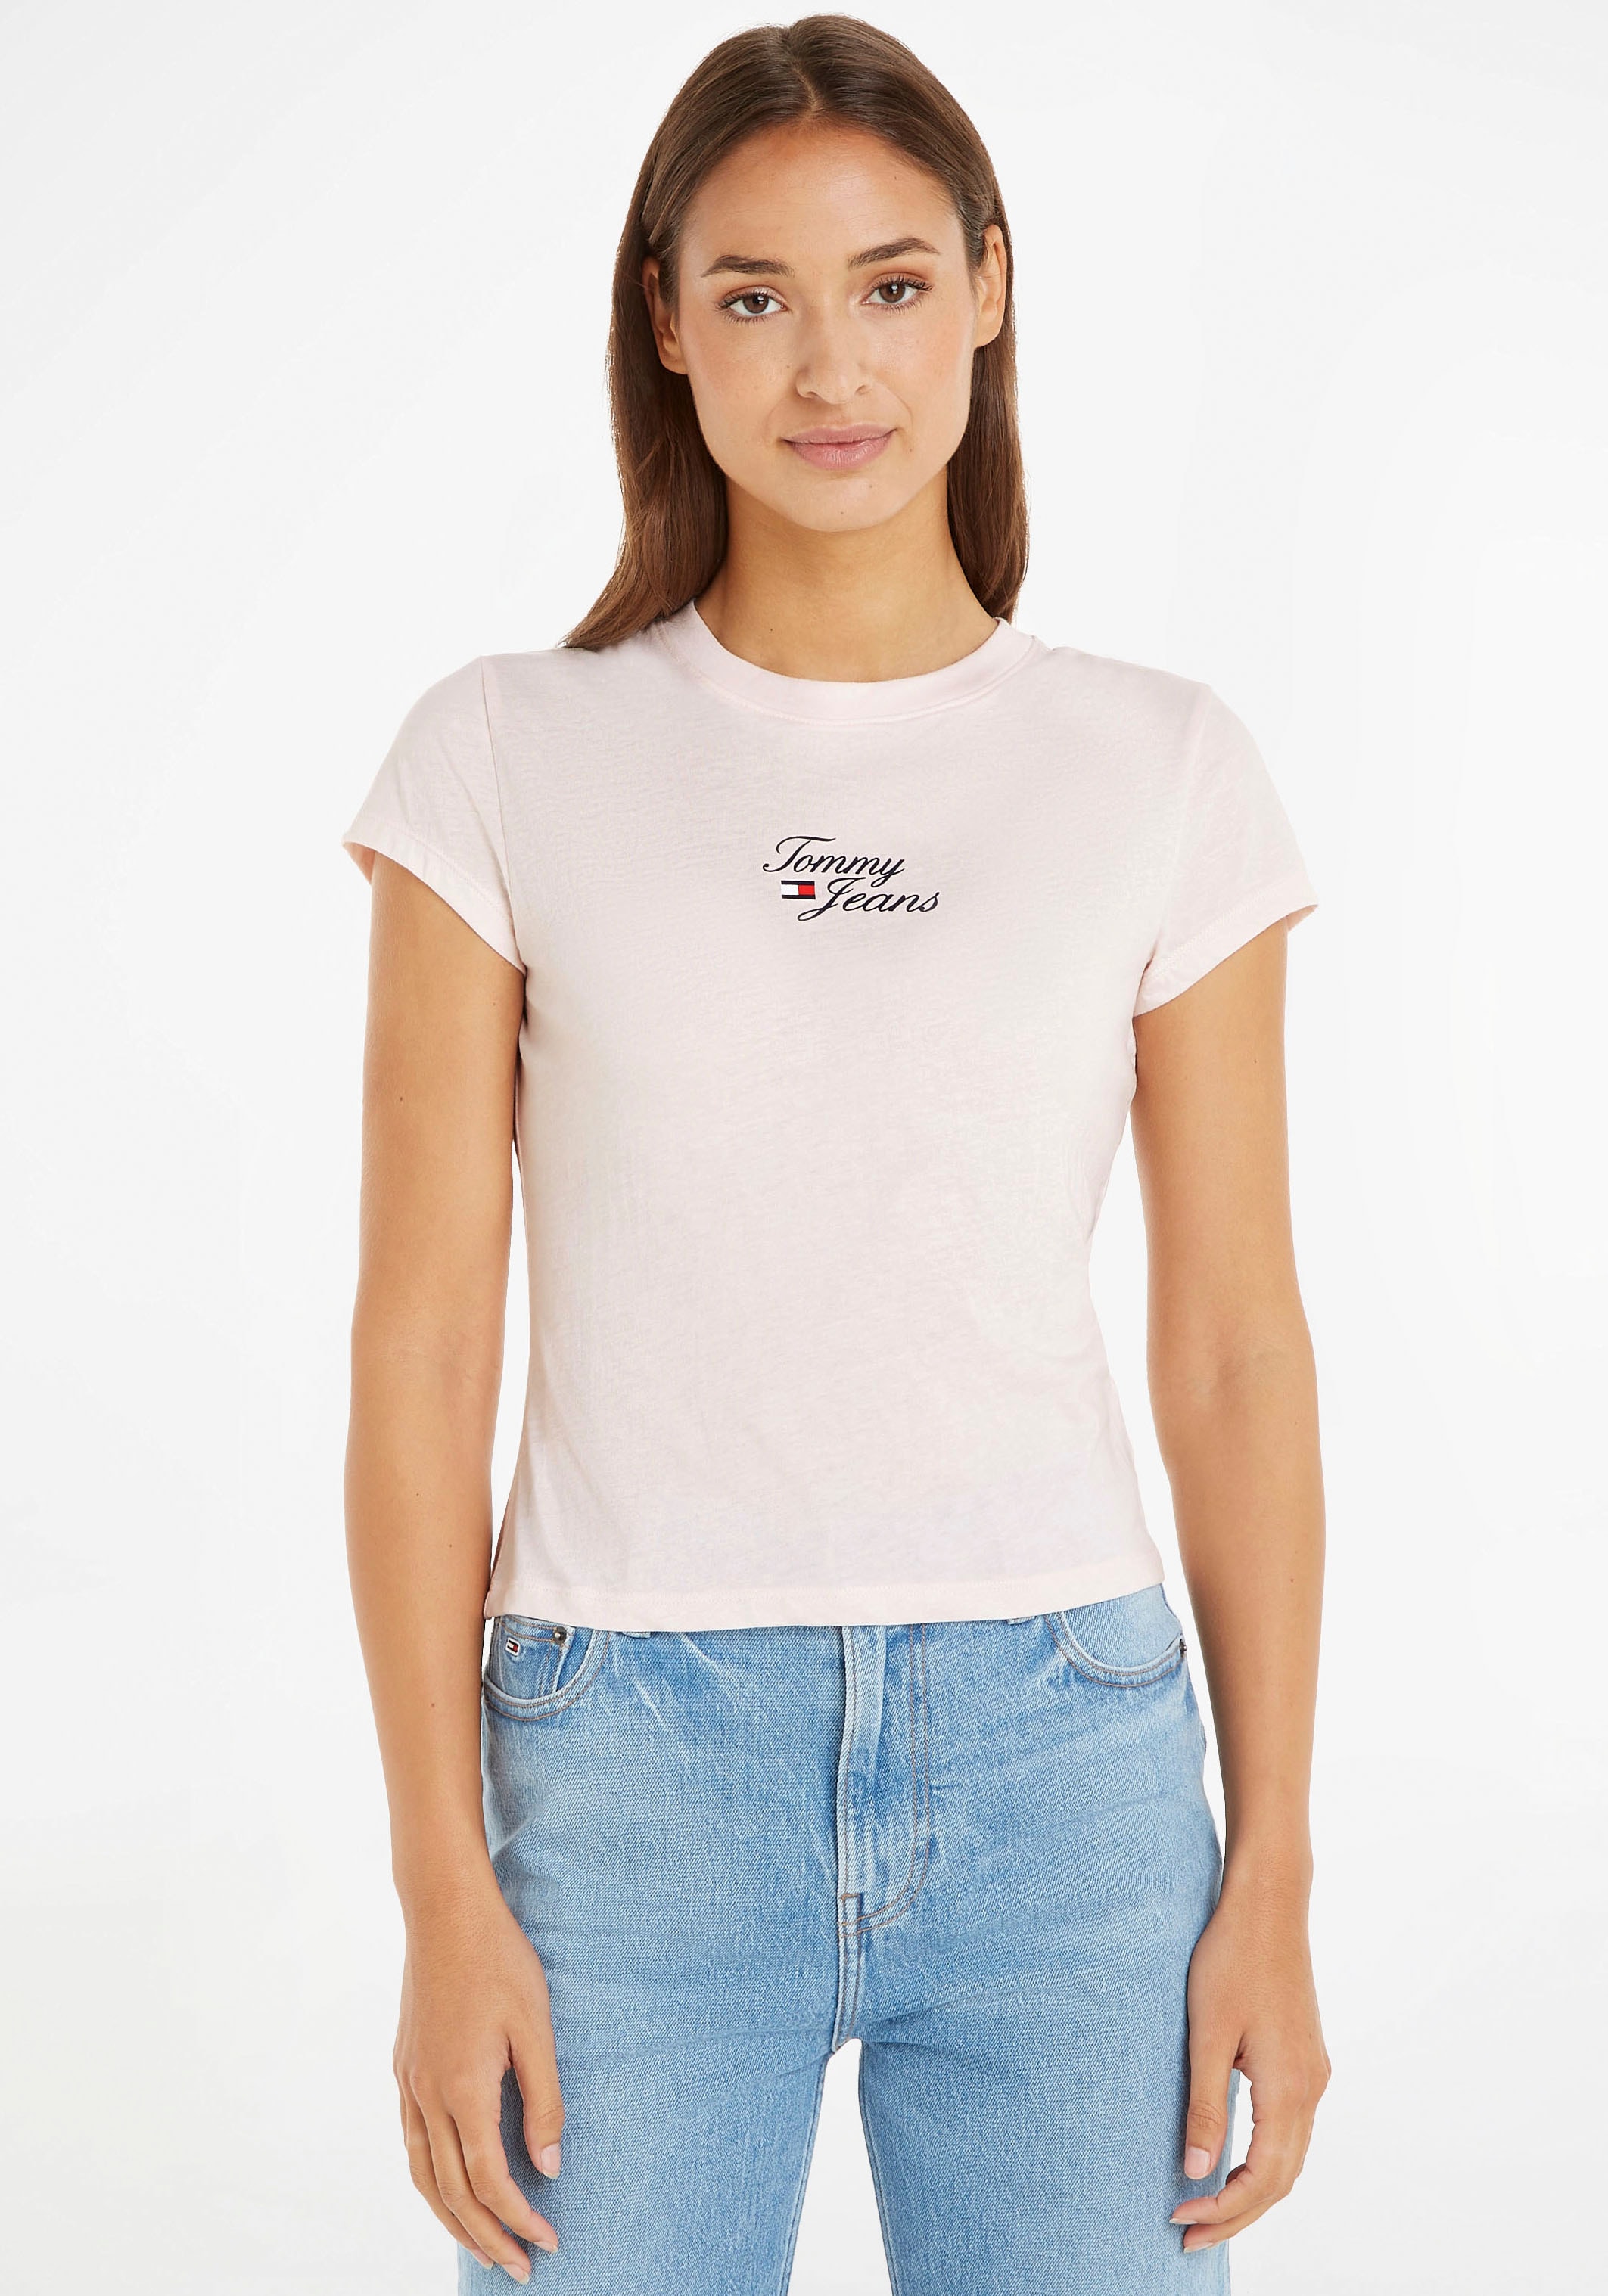 Jeans SS«, stylisches Logodruck LOGO ESSENTIAL Tommy OTTO bestellen bei BBY Damen-T-Shirt mit 1 »TJW und trendiges T-Shirt